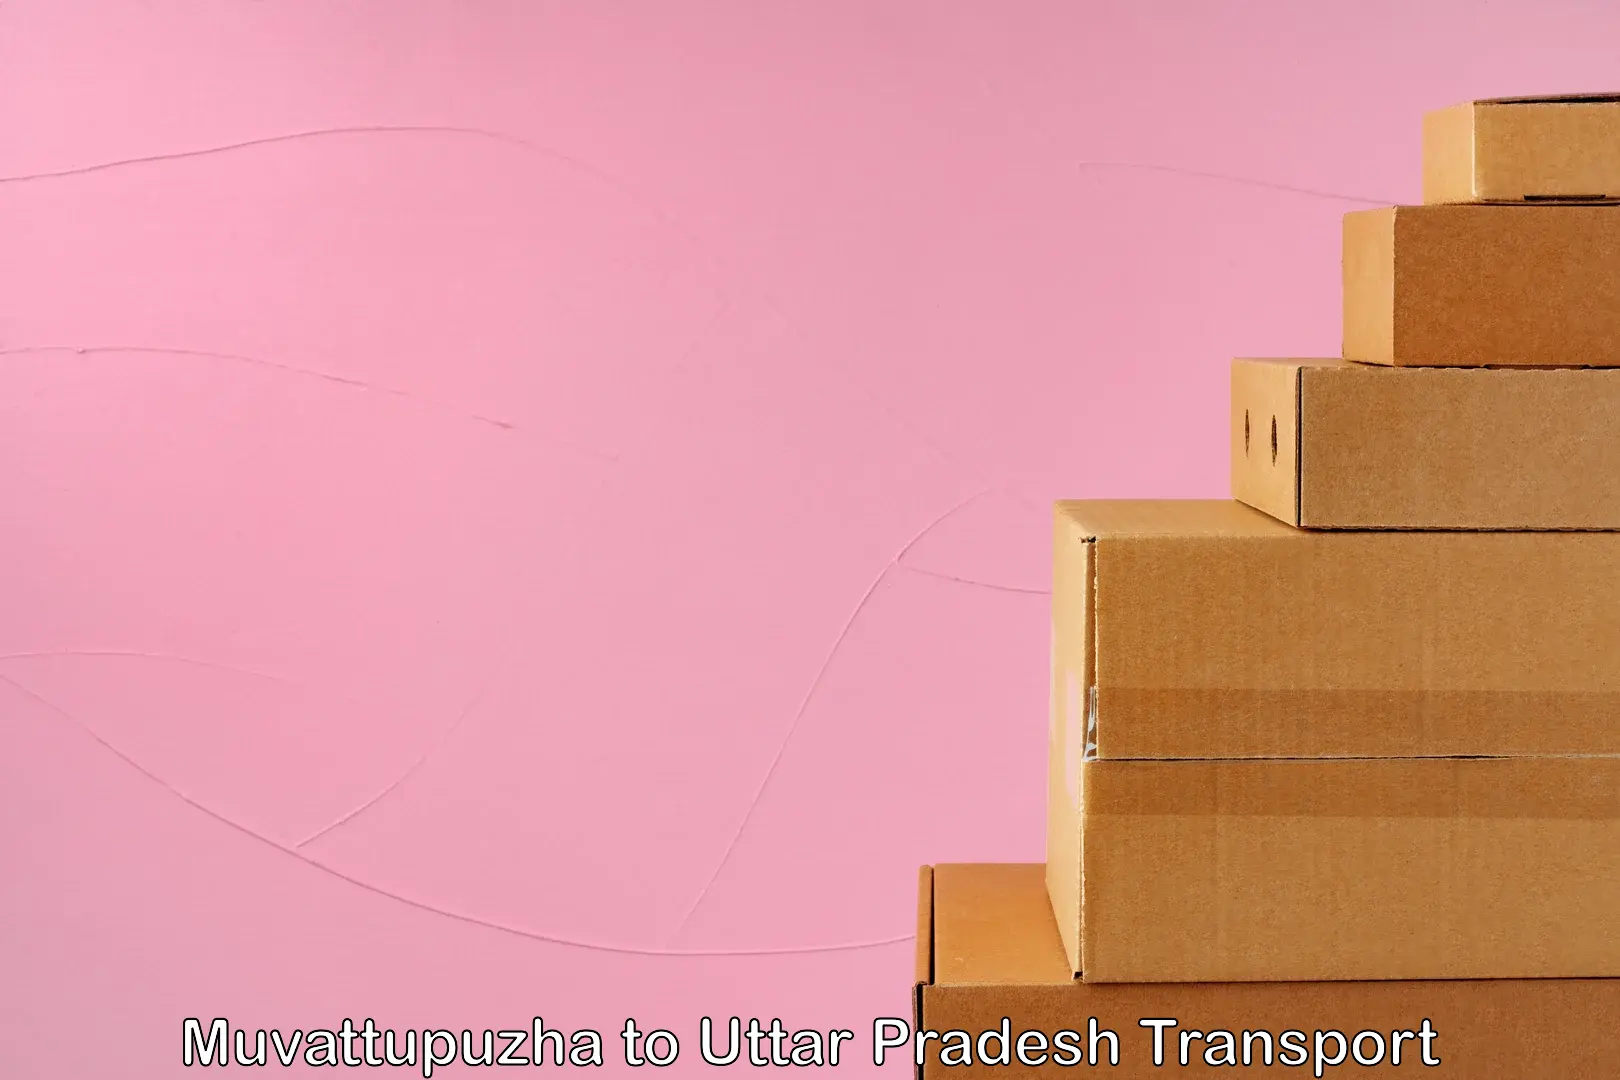 Commercial transport service Muvattupuzha to Uttar Pradesh